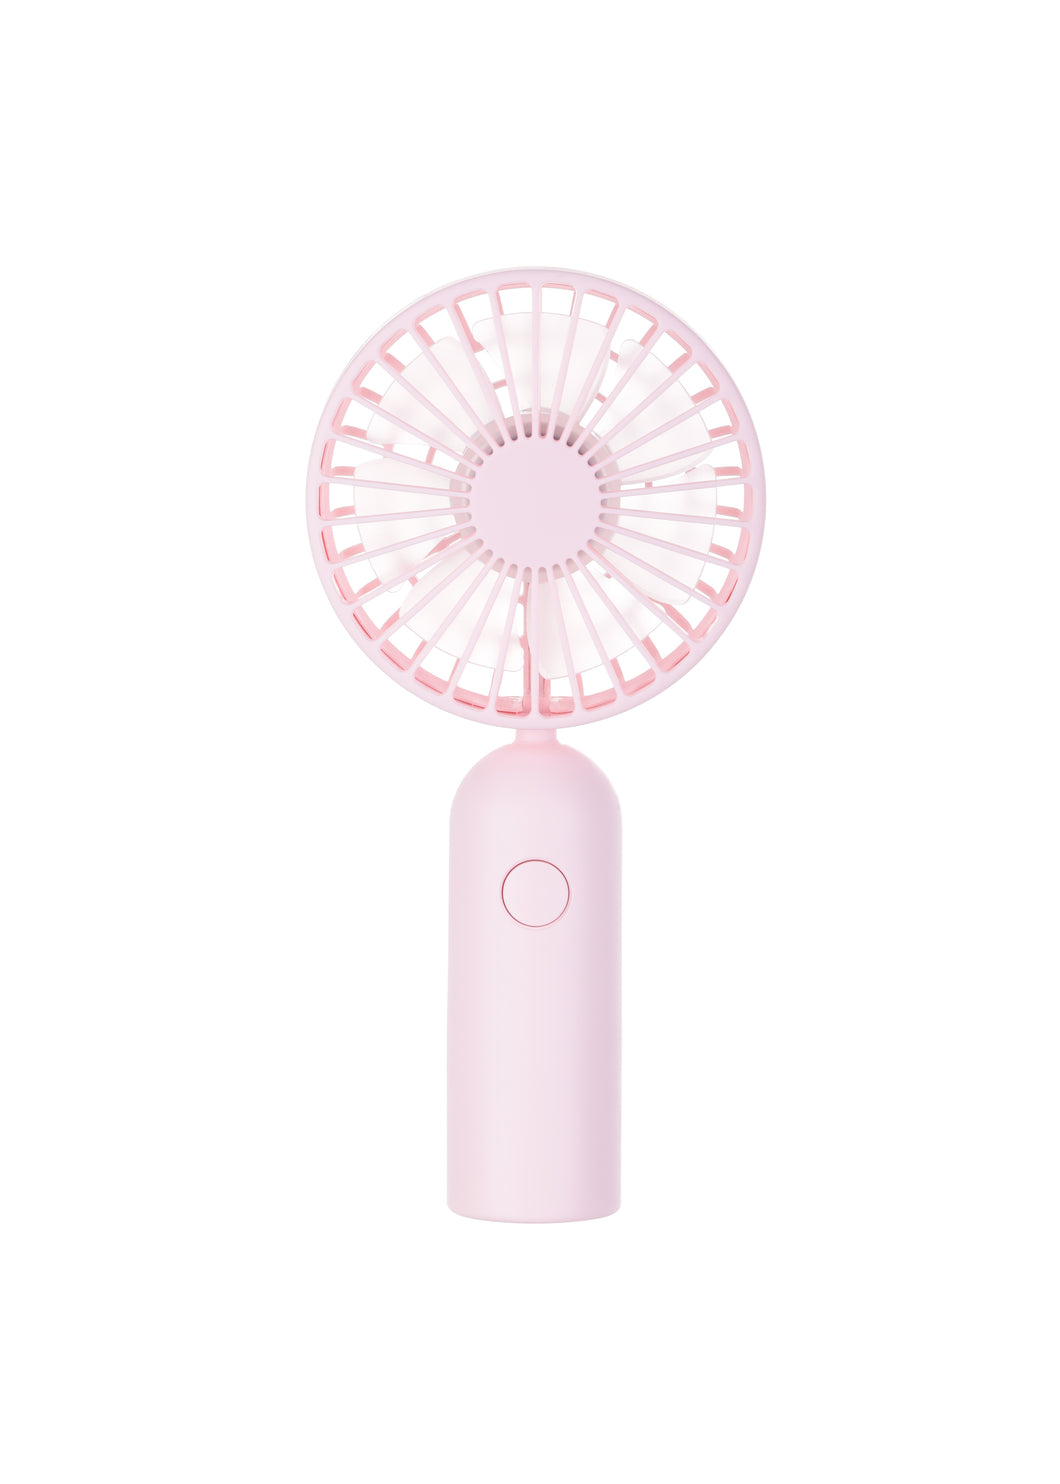 Mini Fan(Pink)